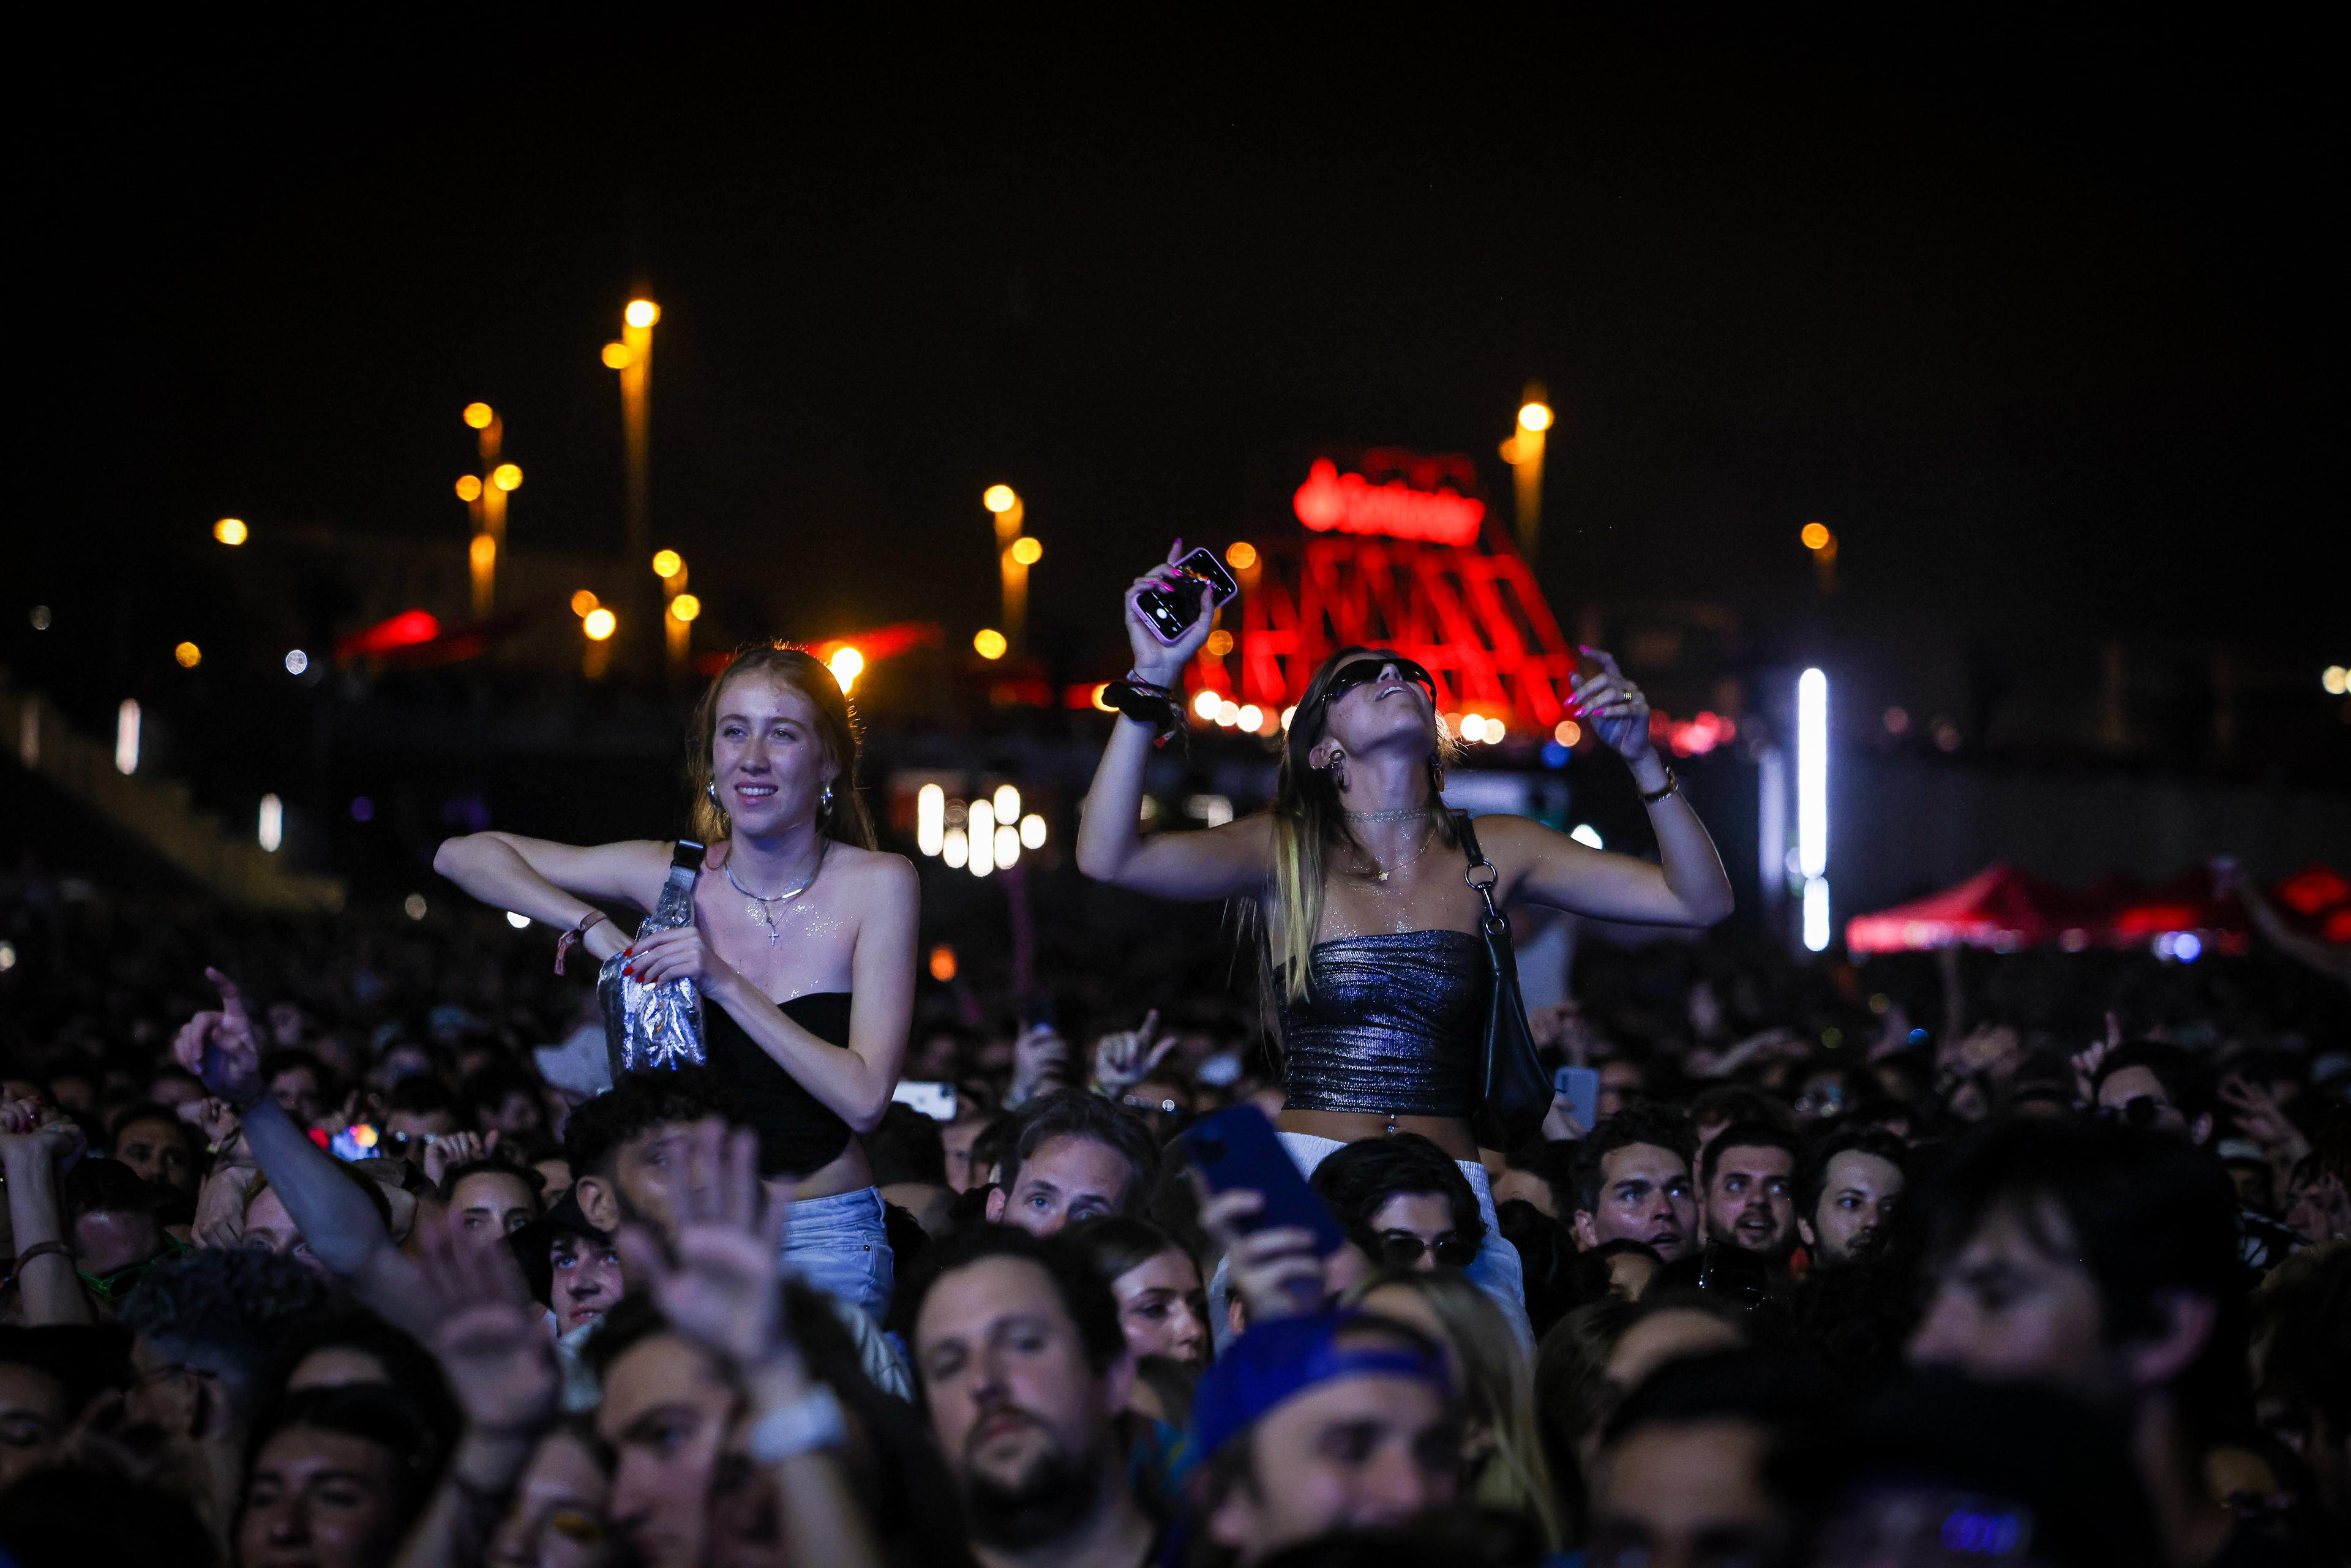 Barcelona desbanca Madrid com a ciutat amb més ingressos per música en directe, segons un estudi d'OBS Business School